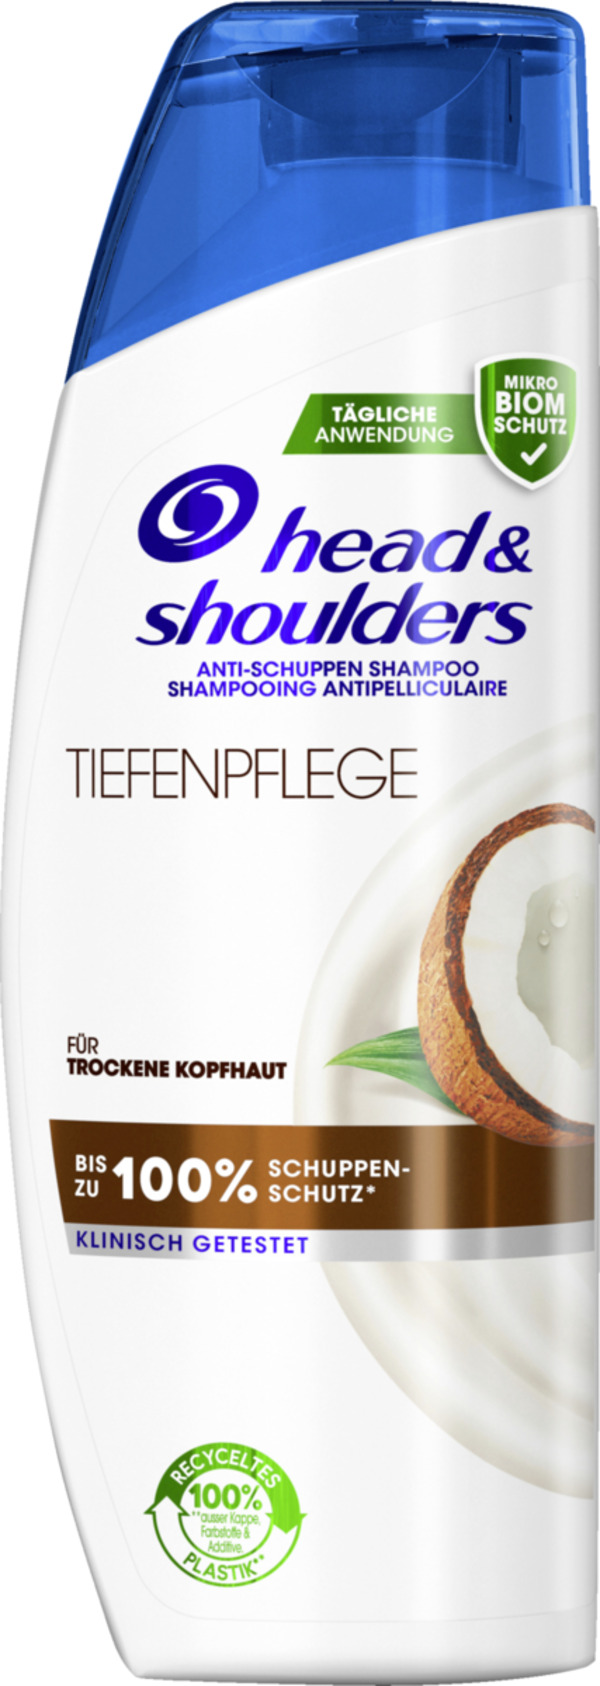 Bild 1 von head & shoulders Anti-Schuppen Shampoo Tiefenpflege